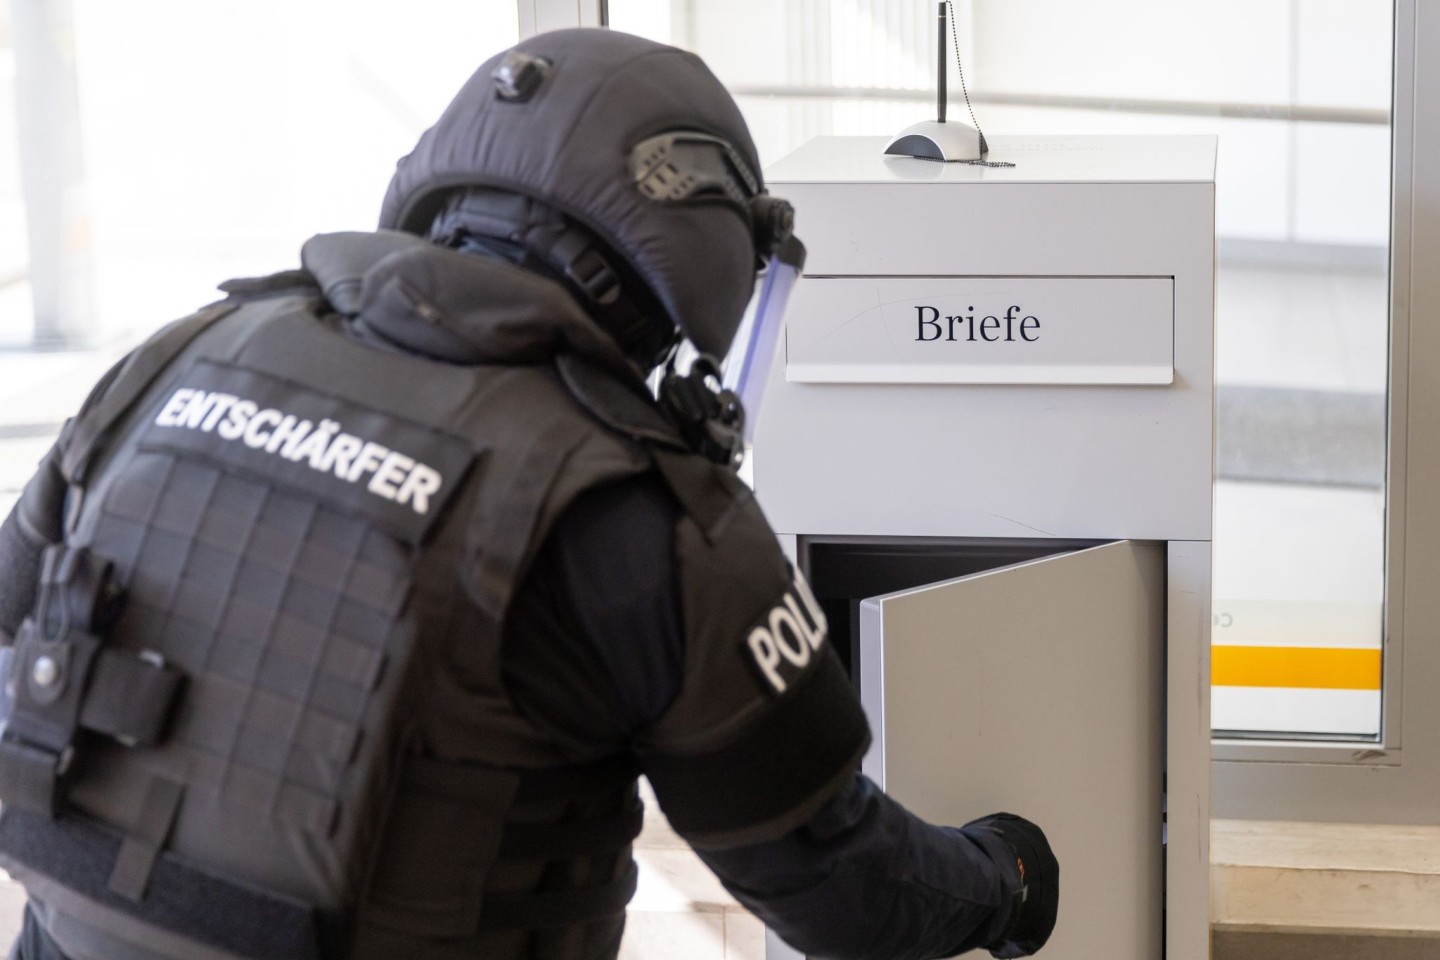 Ein Mitarbeiter der TSG München (Technische Sondergruppe) demonstriert, wie er den Briefkasten in einer Nürnberger Bank zuvor auf verdächtige Inhalte überprüft hatte.